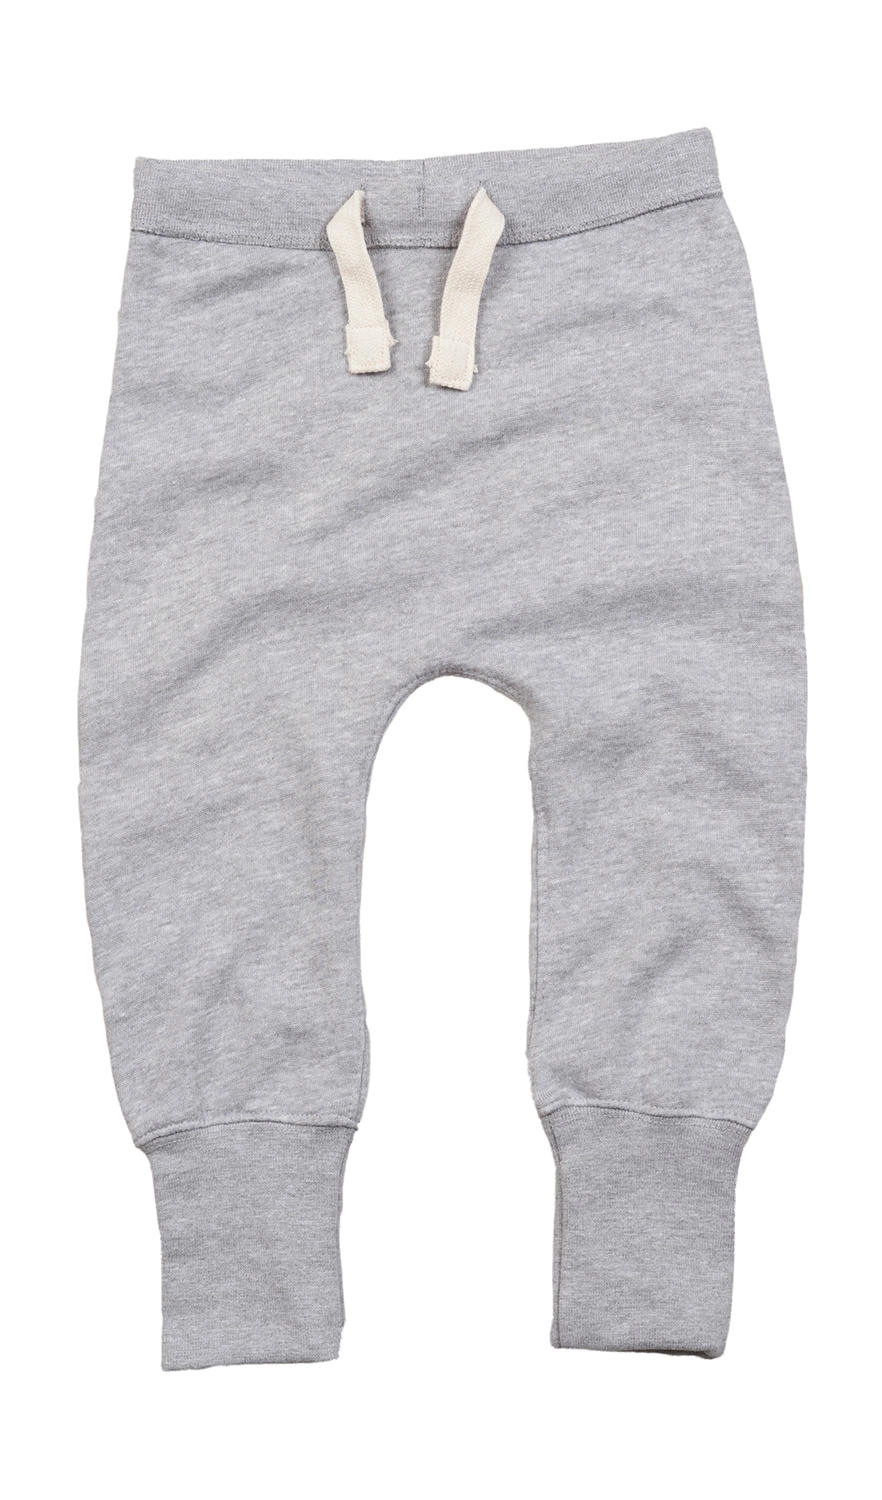 Baby Sweatpants zum Besticken und Bedrucken in der Farbe Heather Grey Melange mit Ihren Logo, Schriftzug oder Motiv.